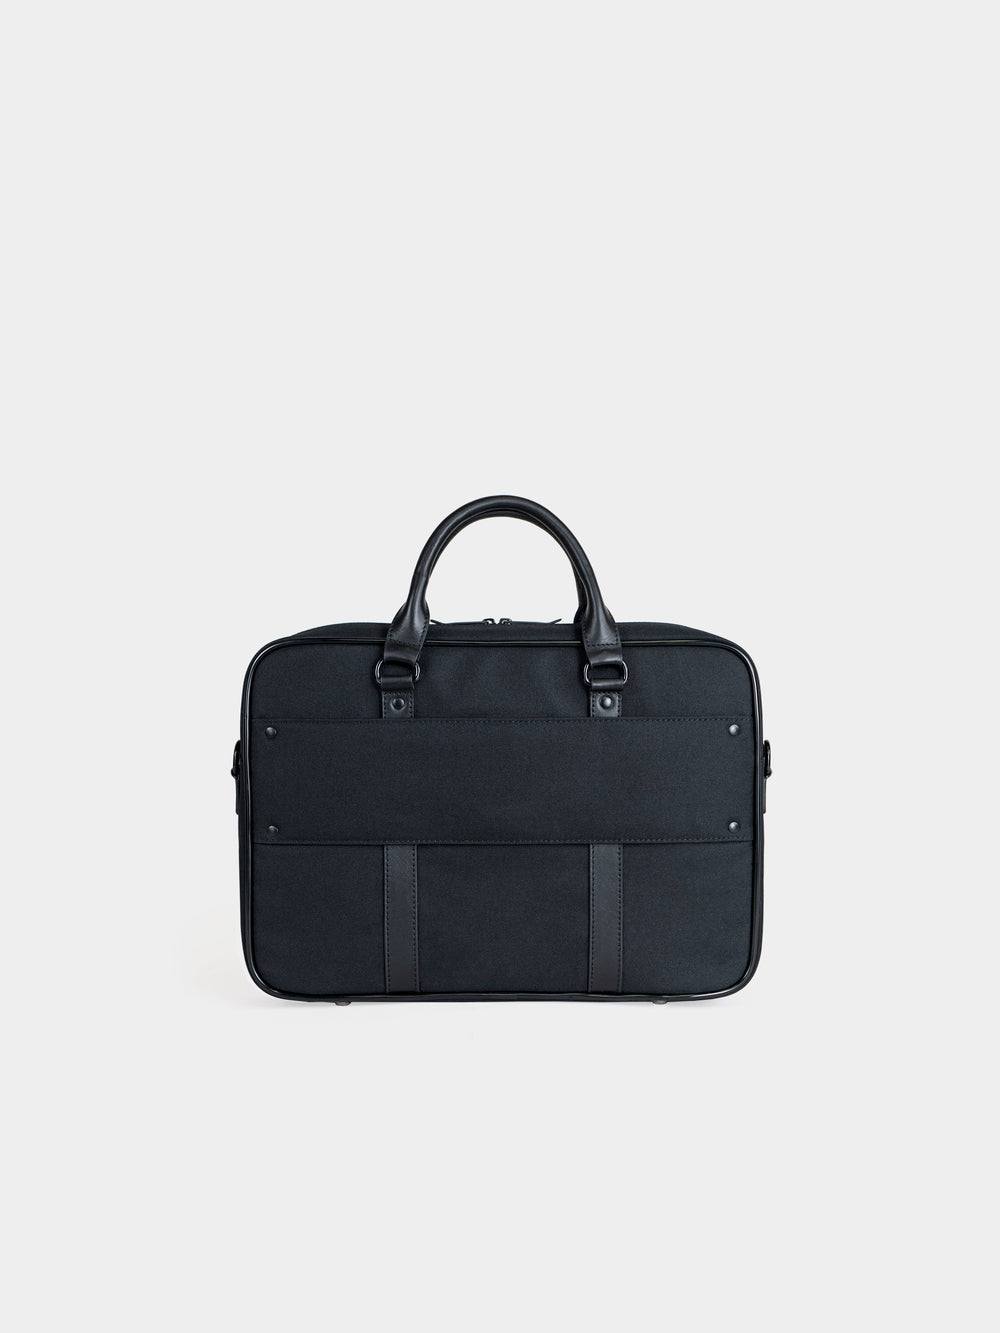 vocier c25 briefcase for luggage